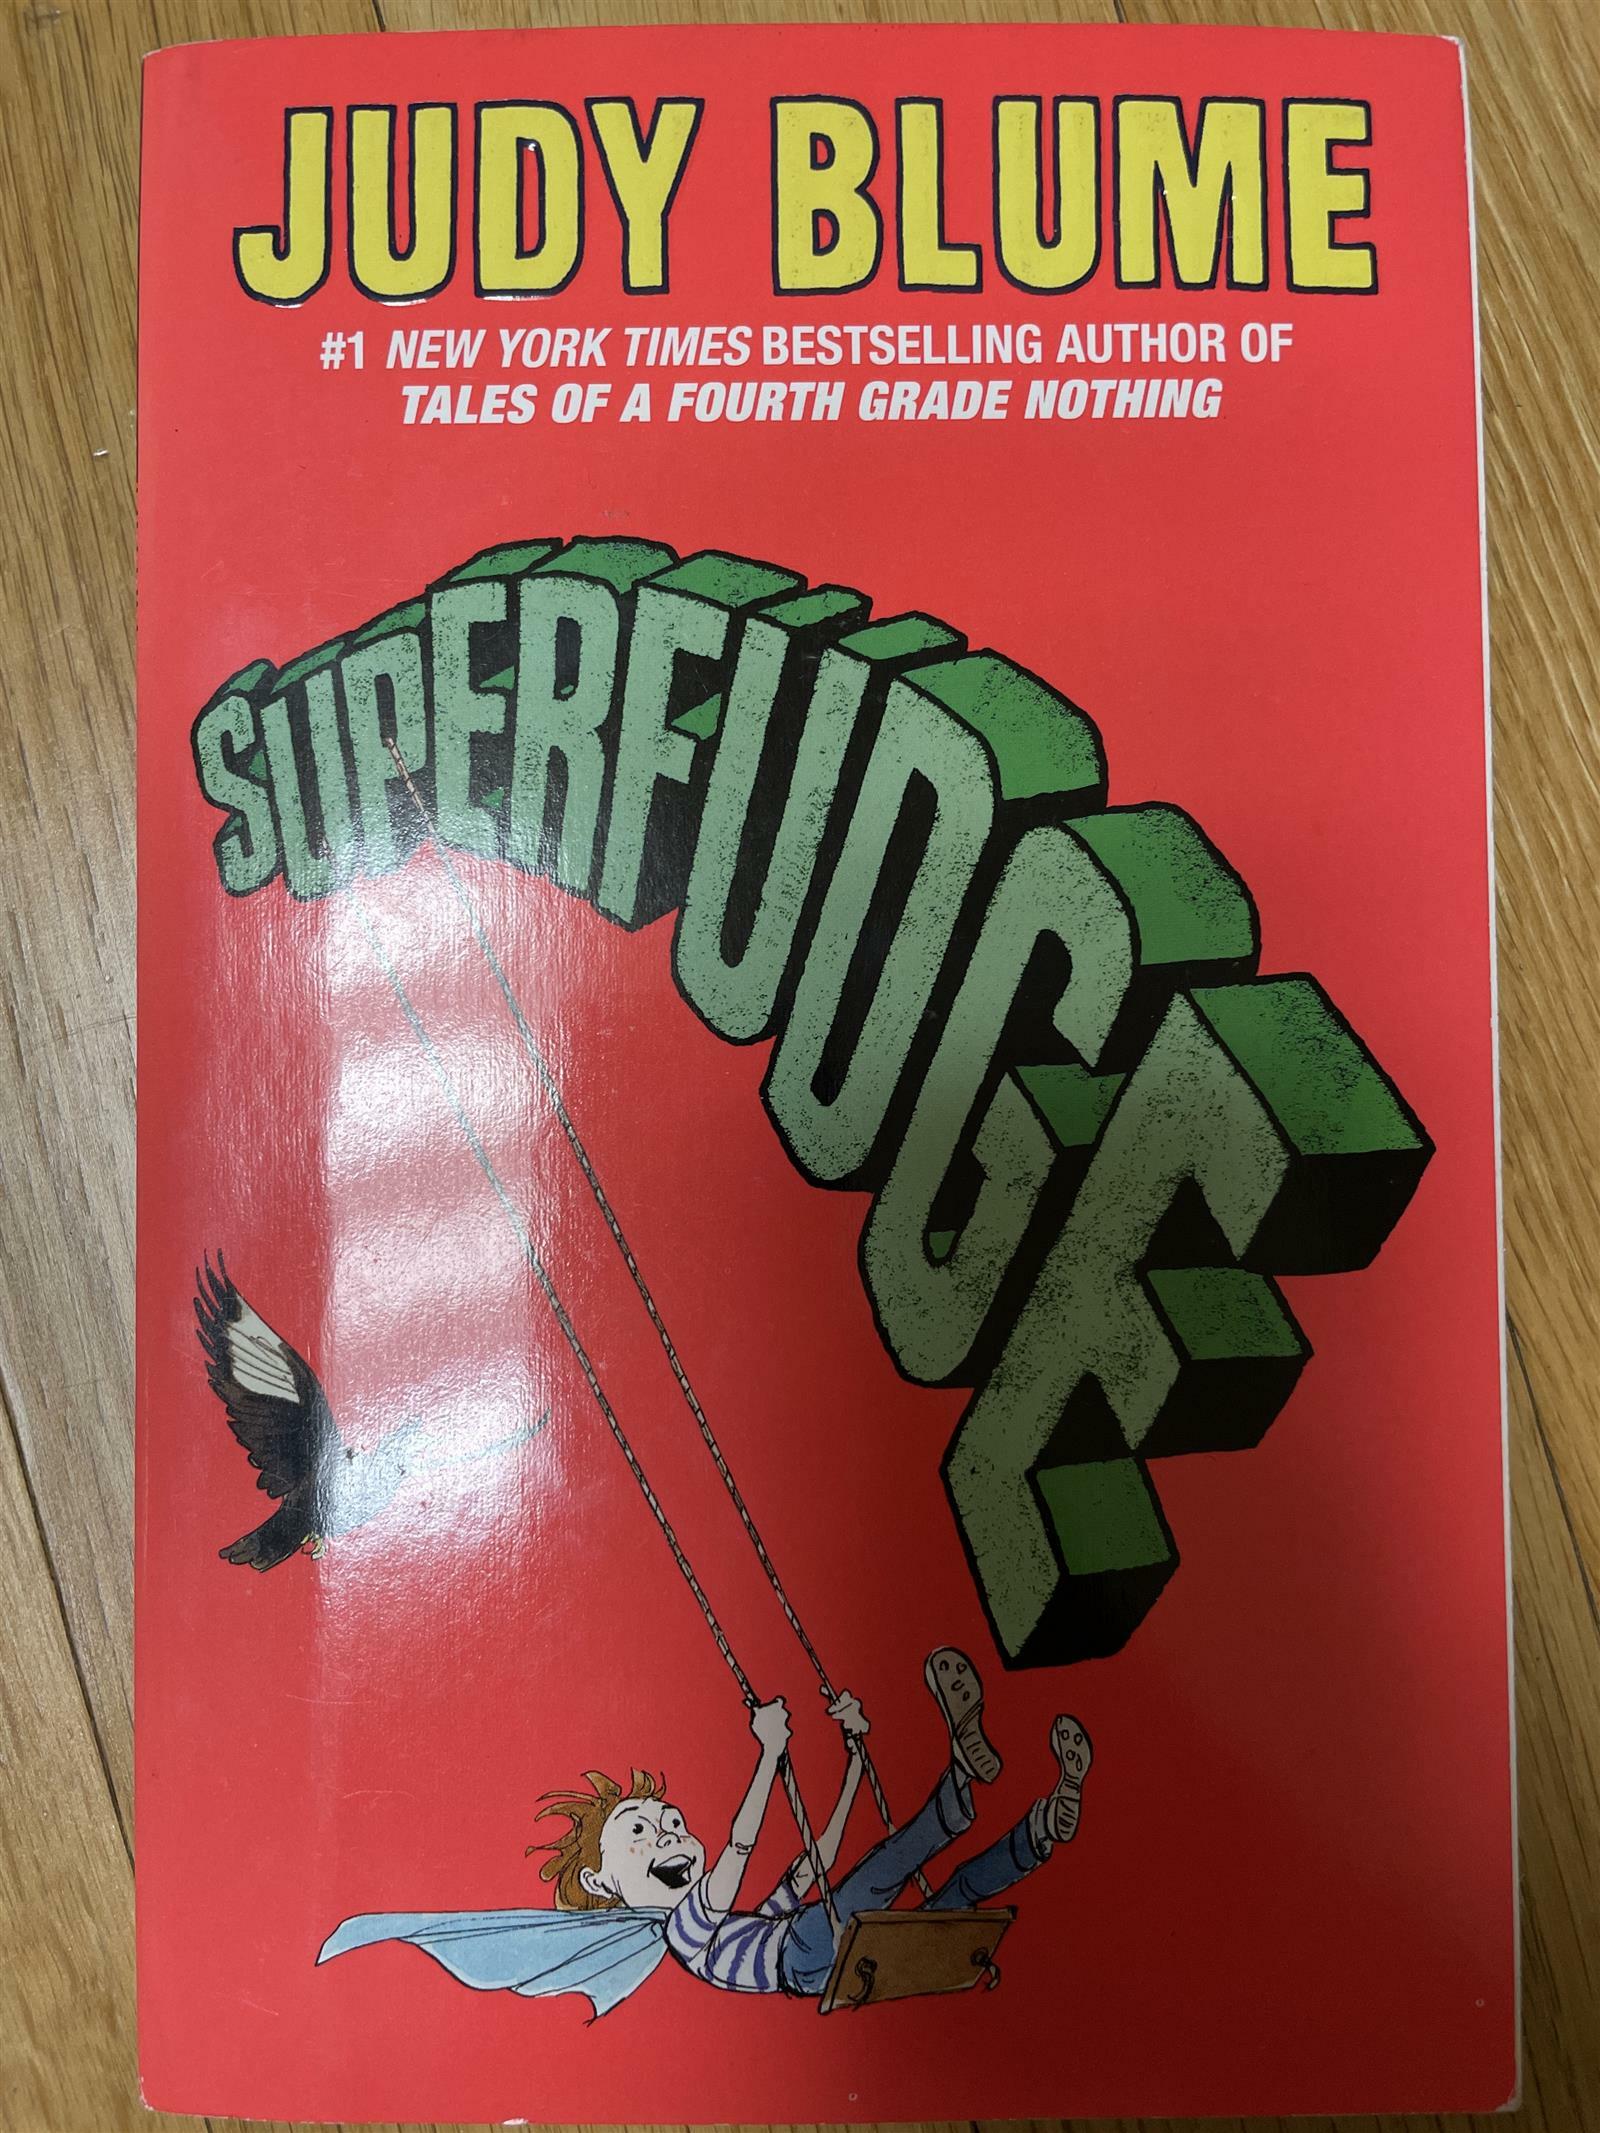 [중고] Superfudge (Paperback)